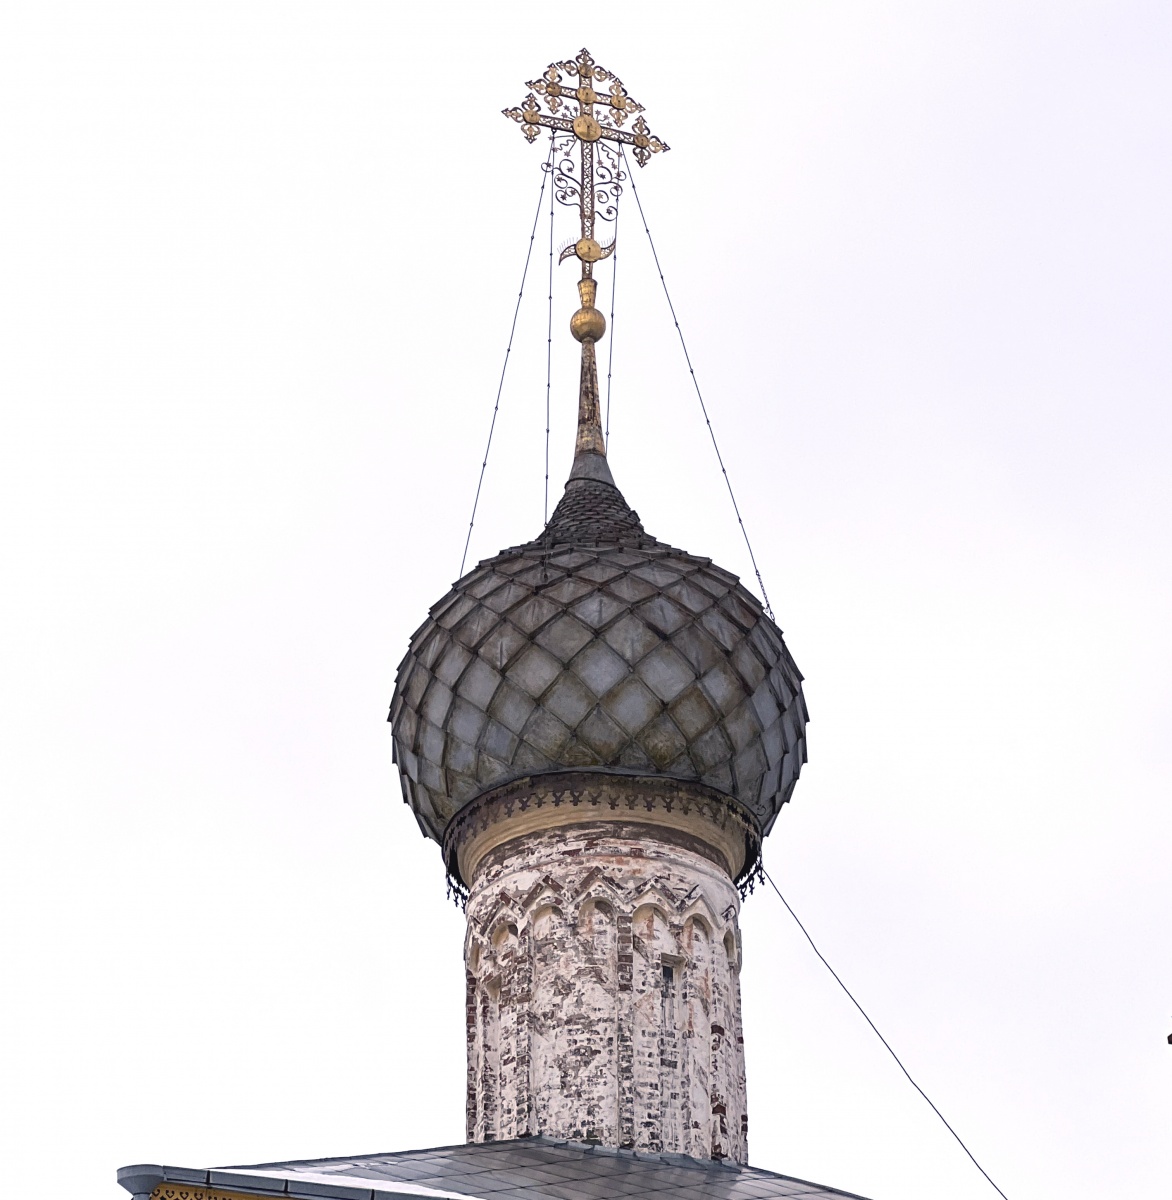 Ил. 1. Глава Церкви Одигитрии Ростовского кремля